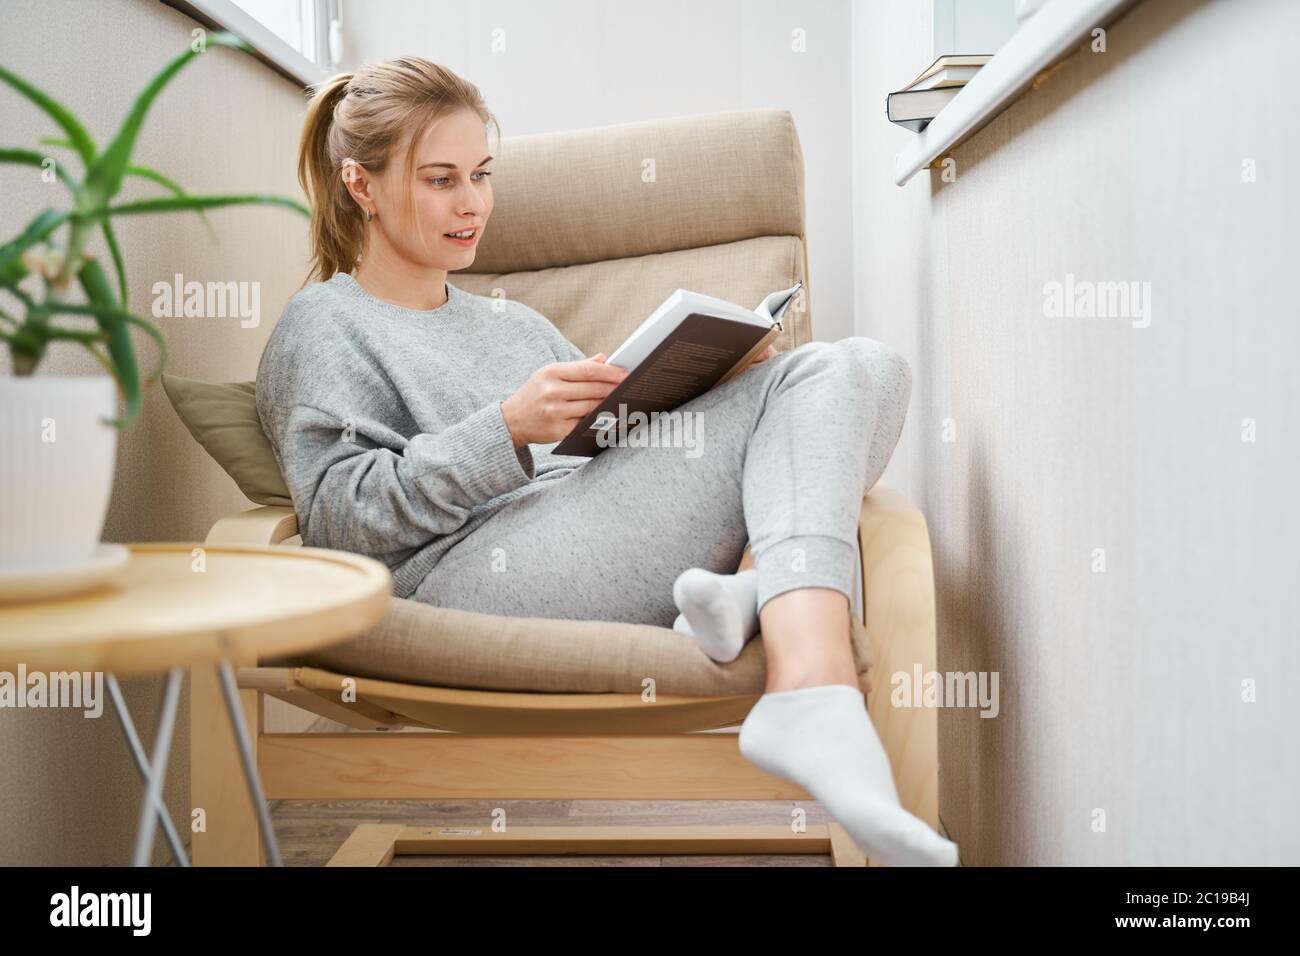 Femme blonde lisant le livre tout en étant assise sur un fauteuil beige appartement Banque D'Images